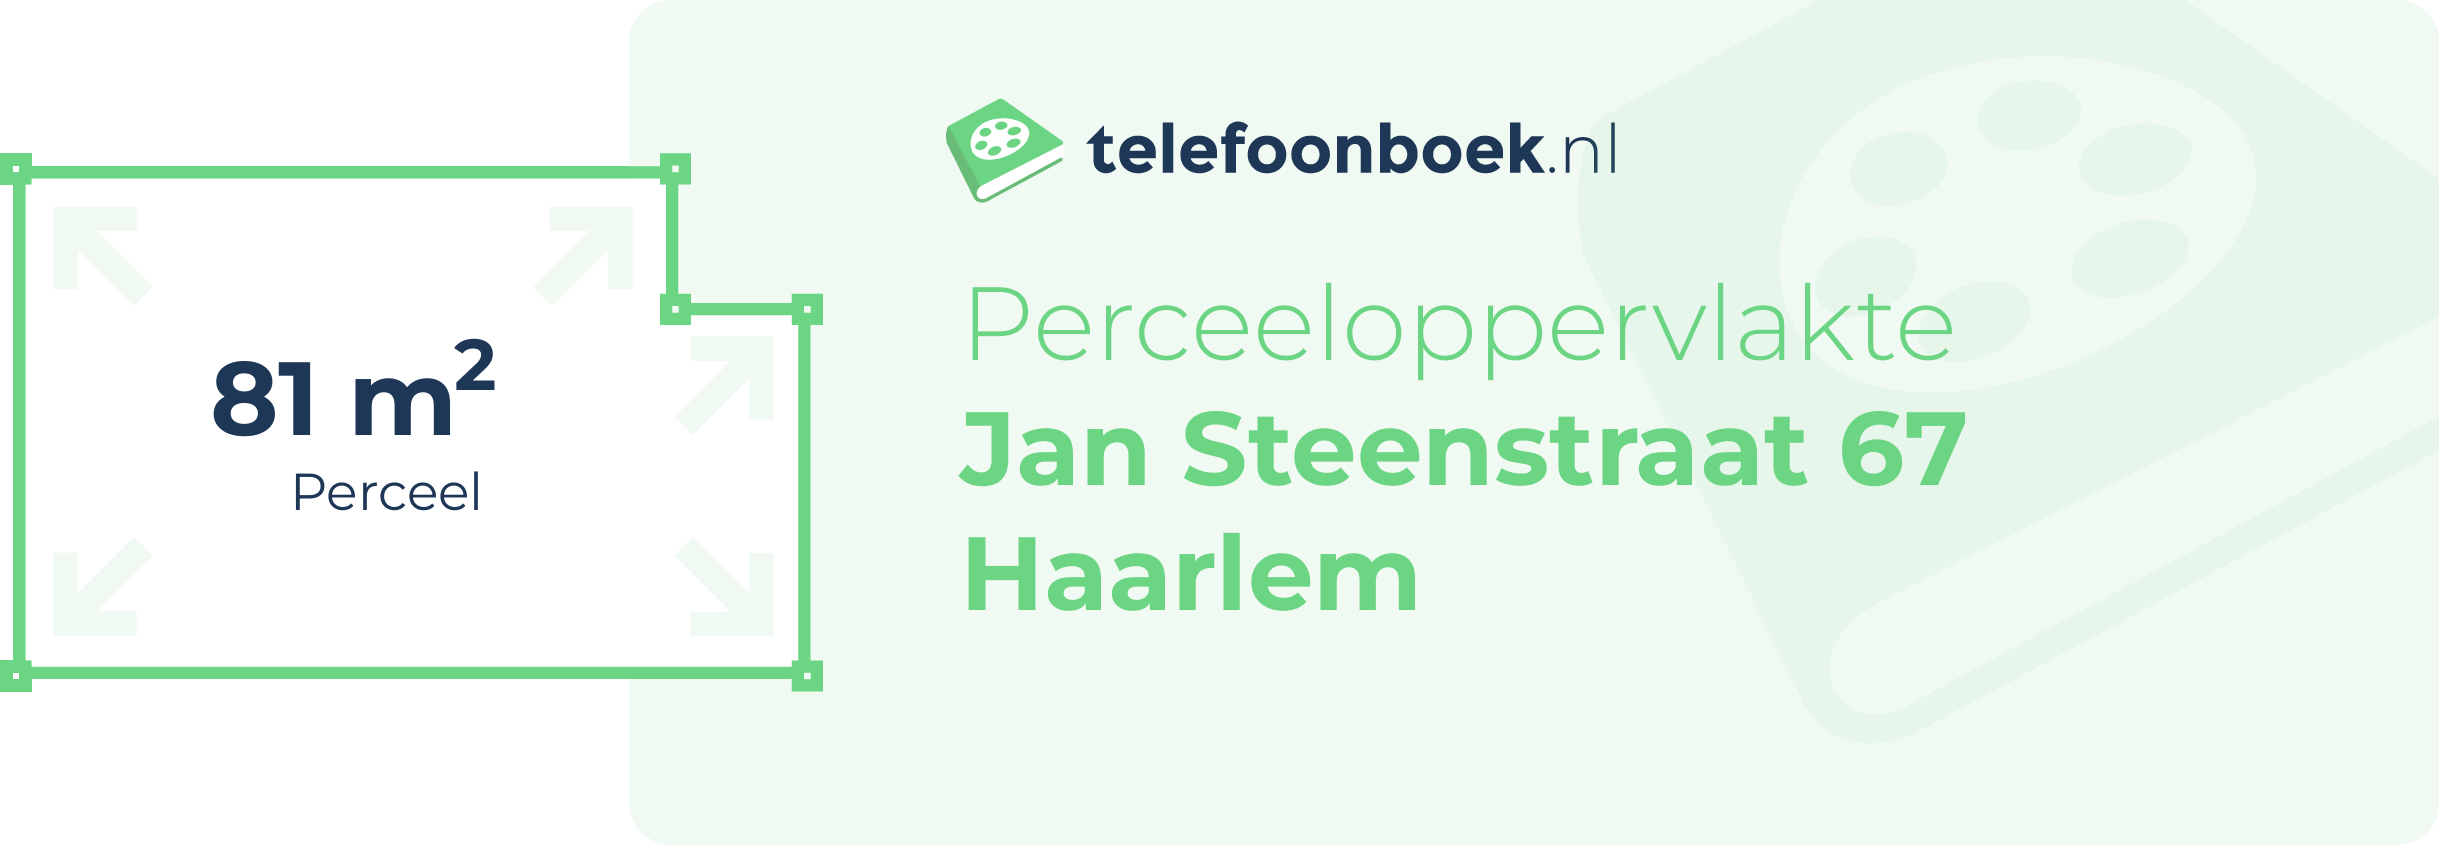 Perceeloppervlakte Jan Steenstraat 67 Haarlem